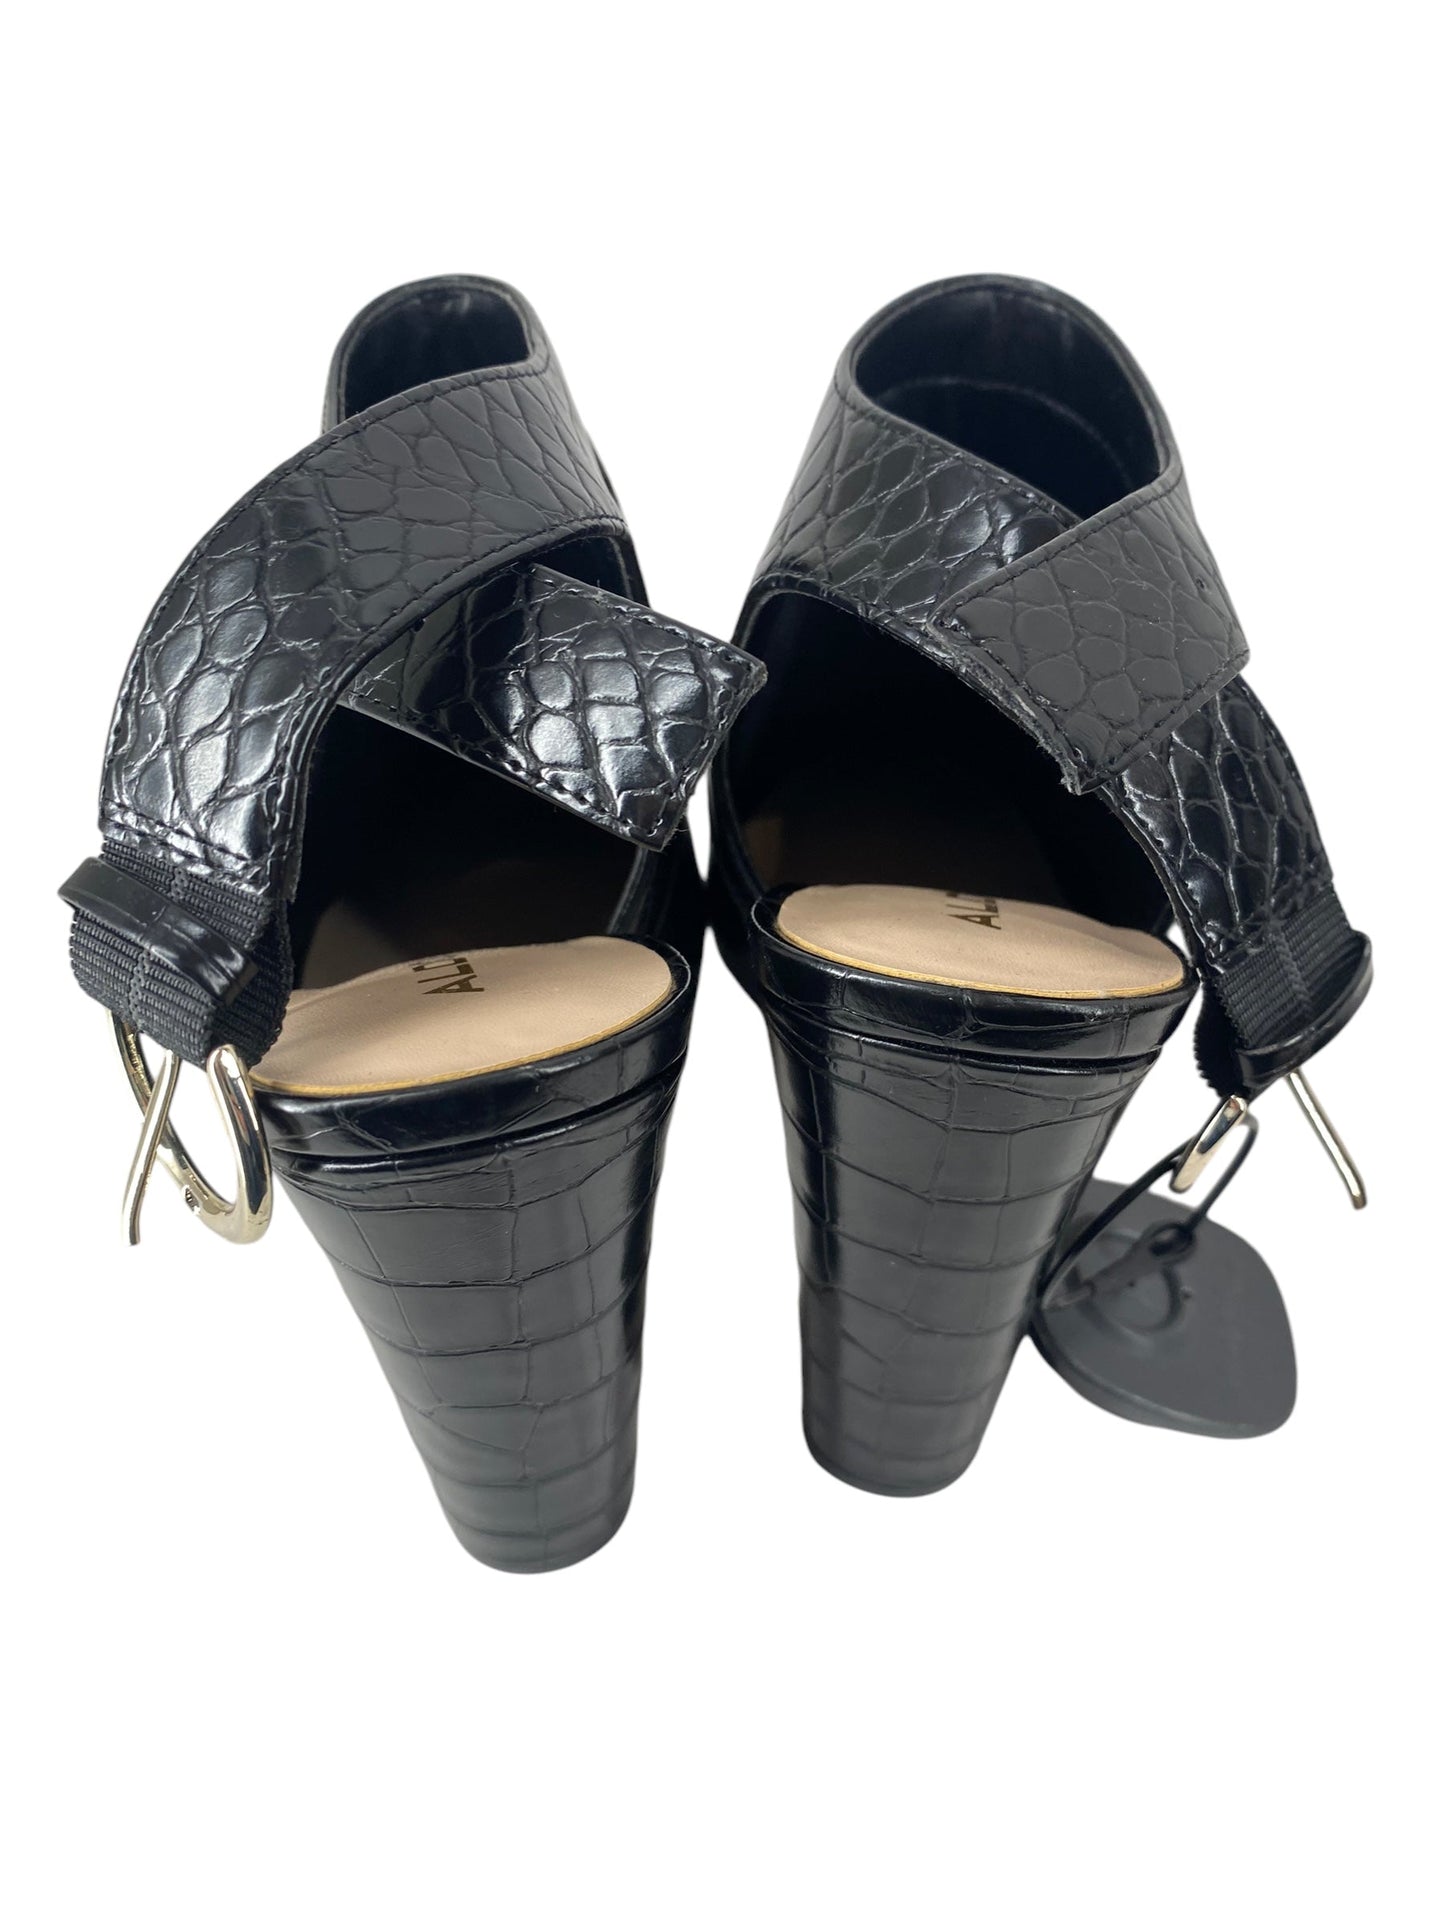 Shoes Heels Block By Aldo  Size: 7.5